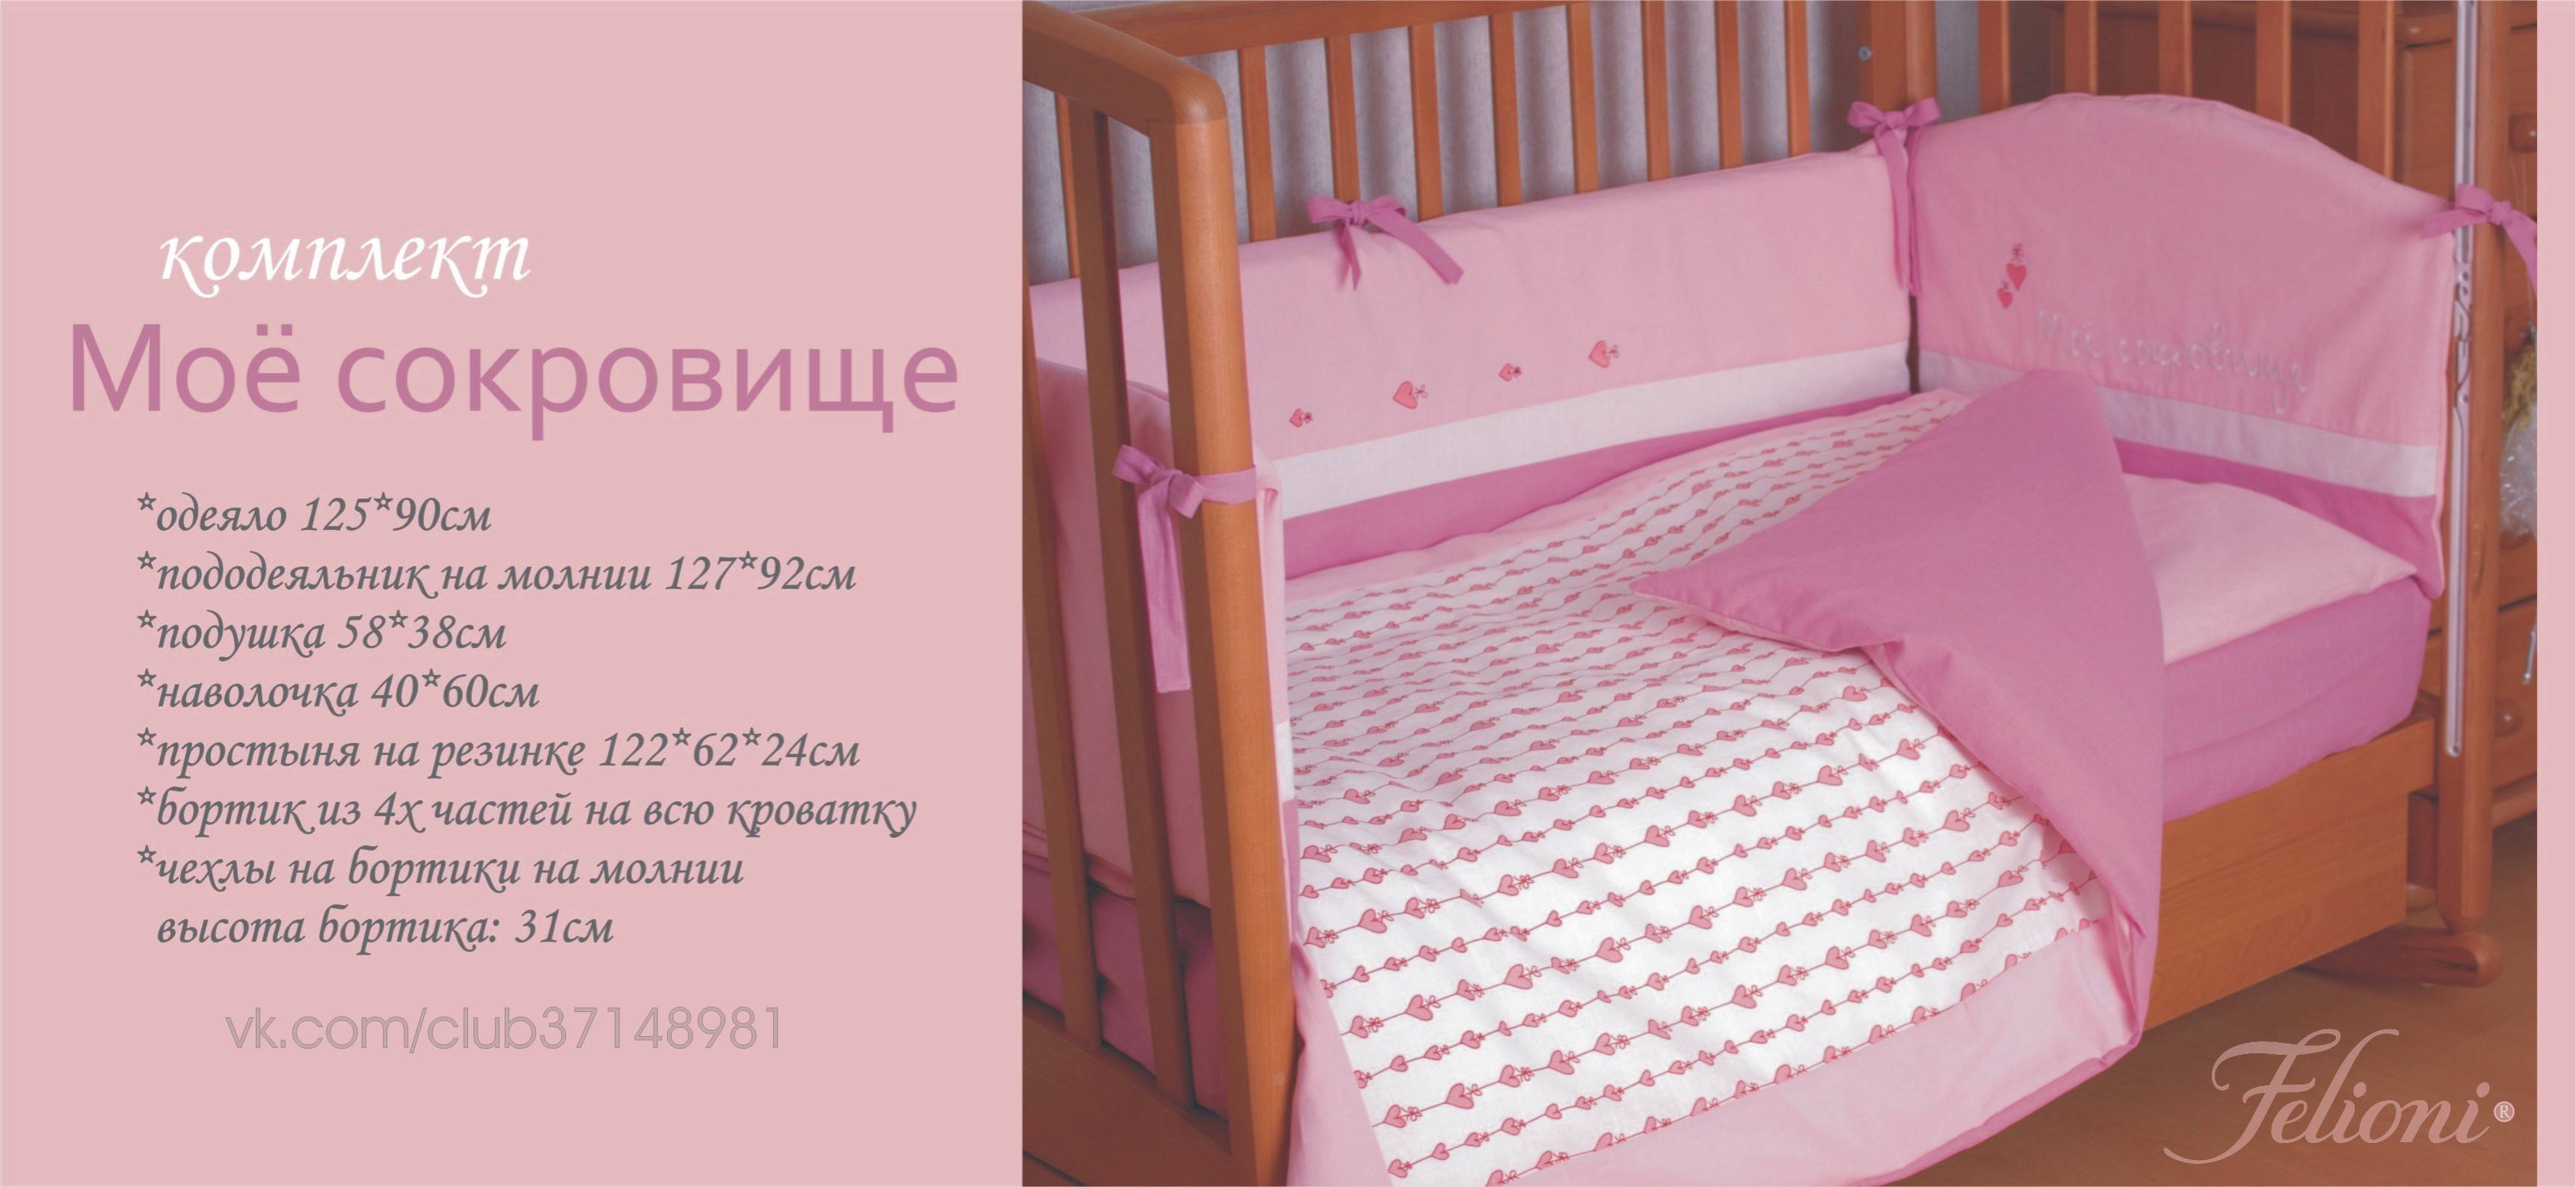 Как выбрать детское постельное белье? | www.podushka.net